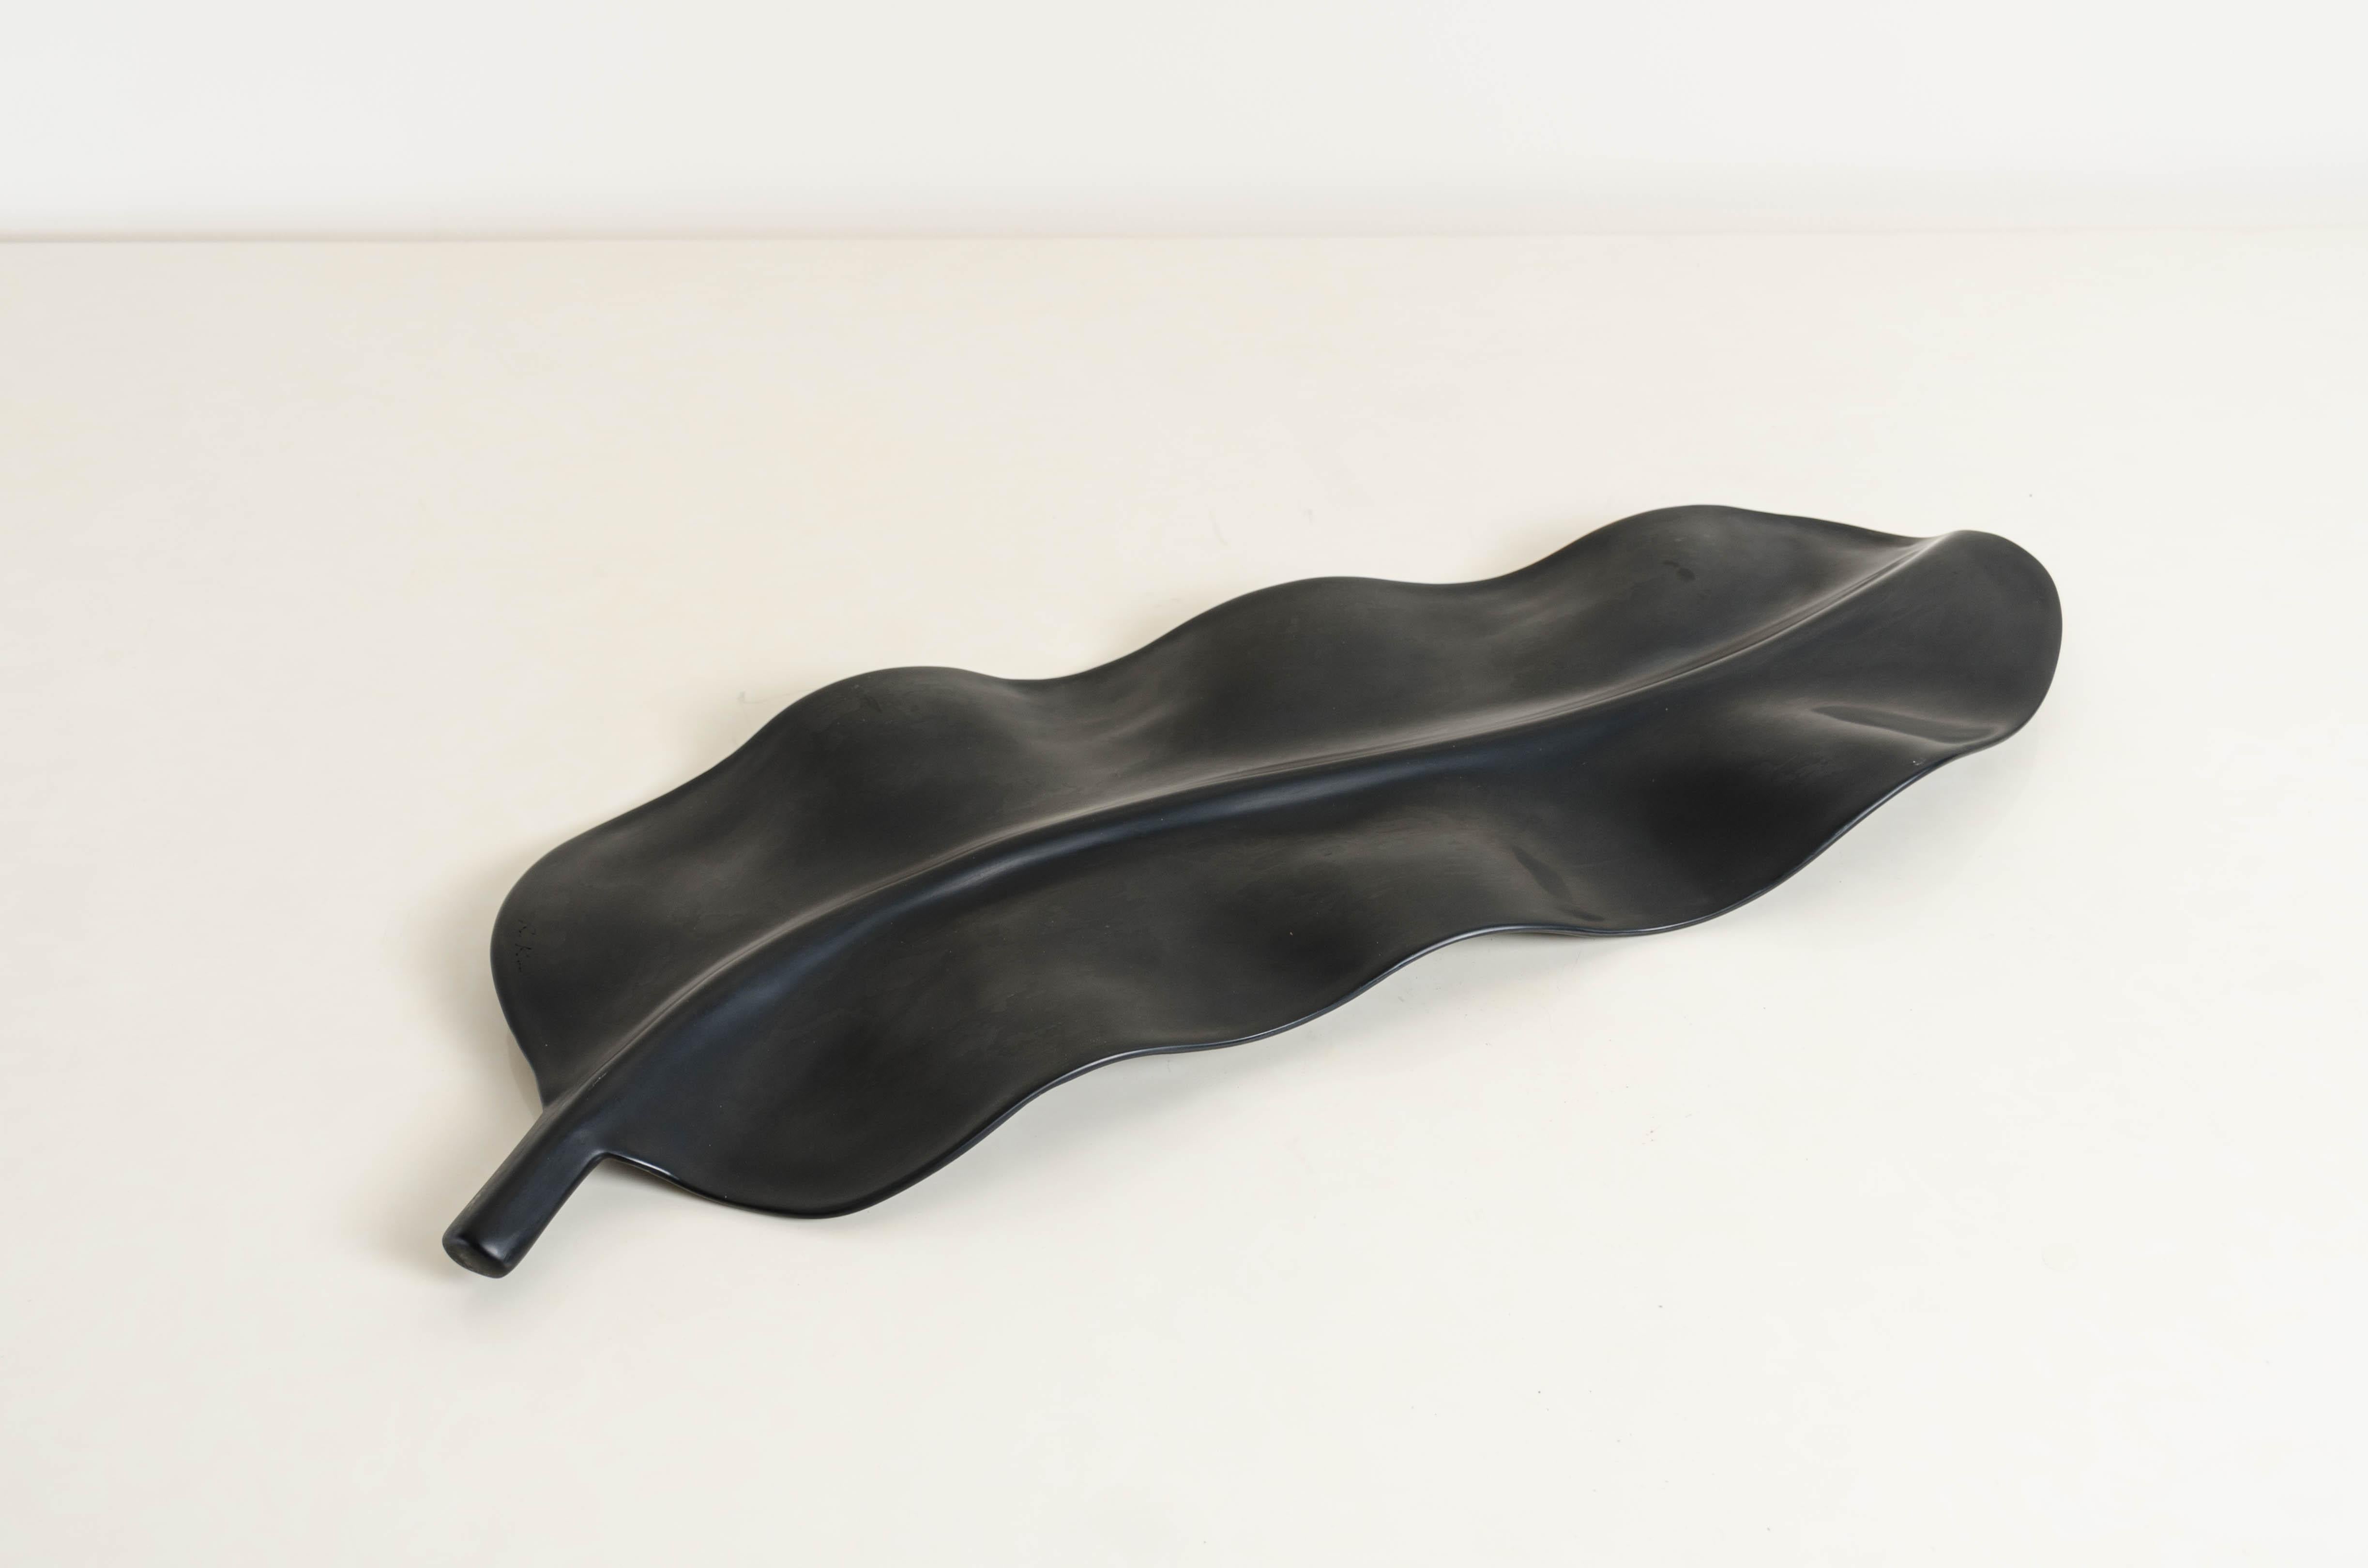 Cuivre Sculpture contemporaine en laque noire en forme de feuille de banane de Robert Kuo, édition limitée en vente